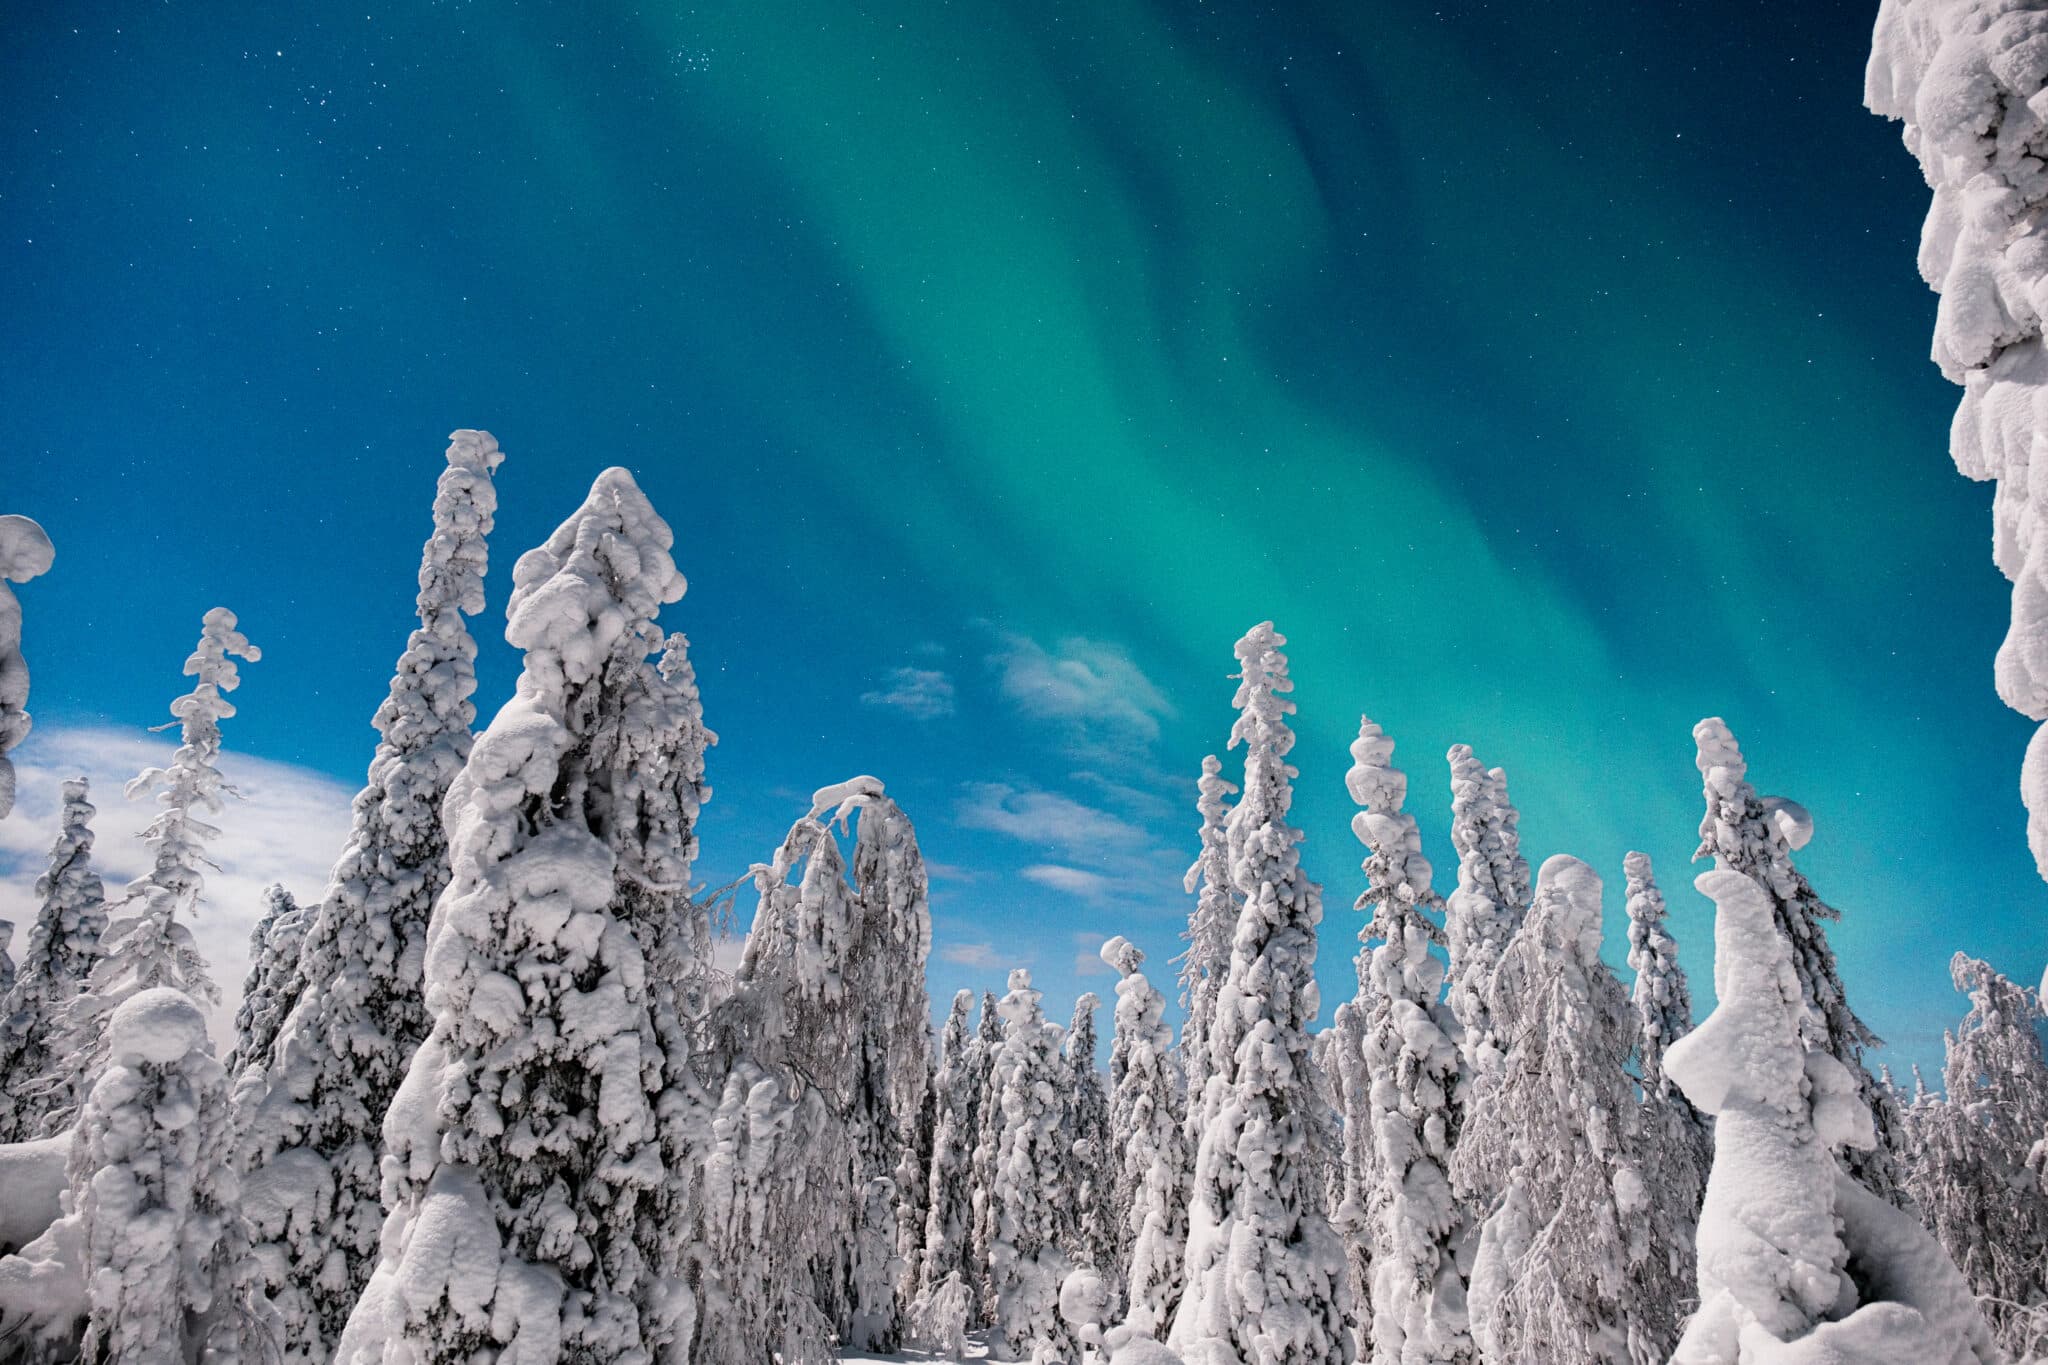 Aurores boréales dans le ciel de Laponie Finlandaise au dessus des sapins enneigés